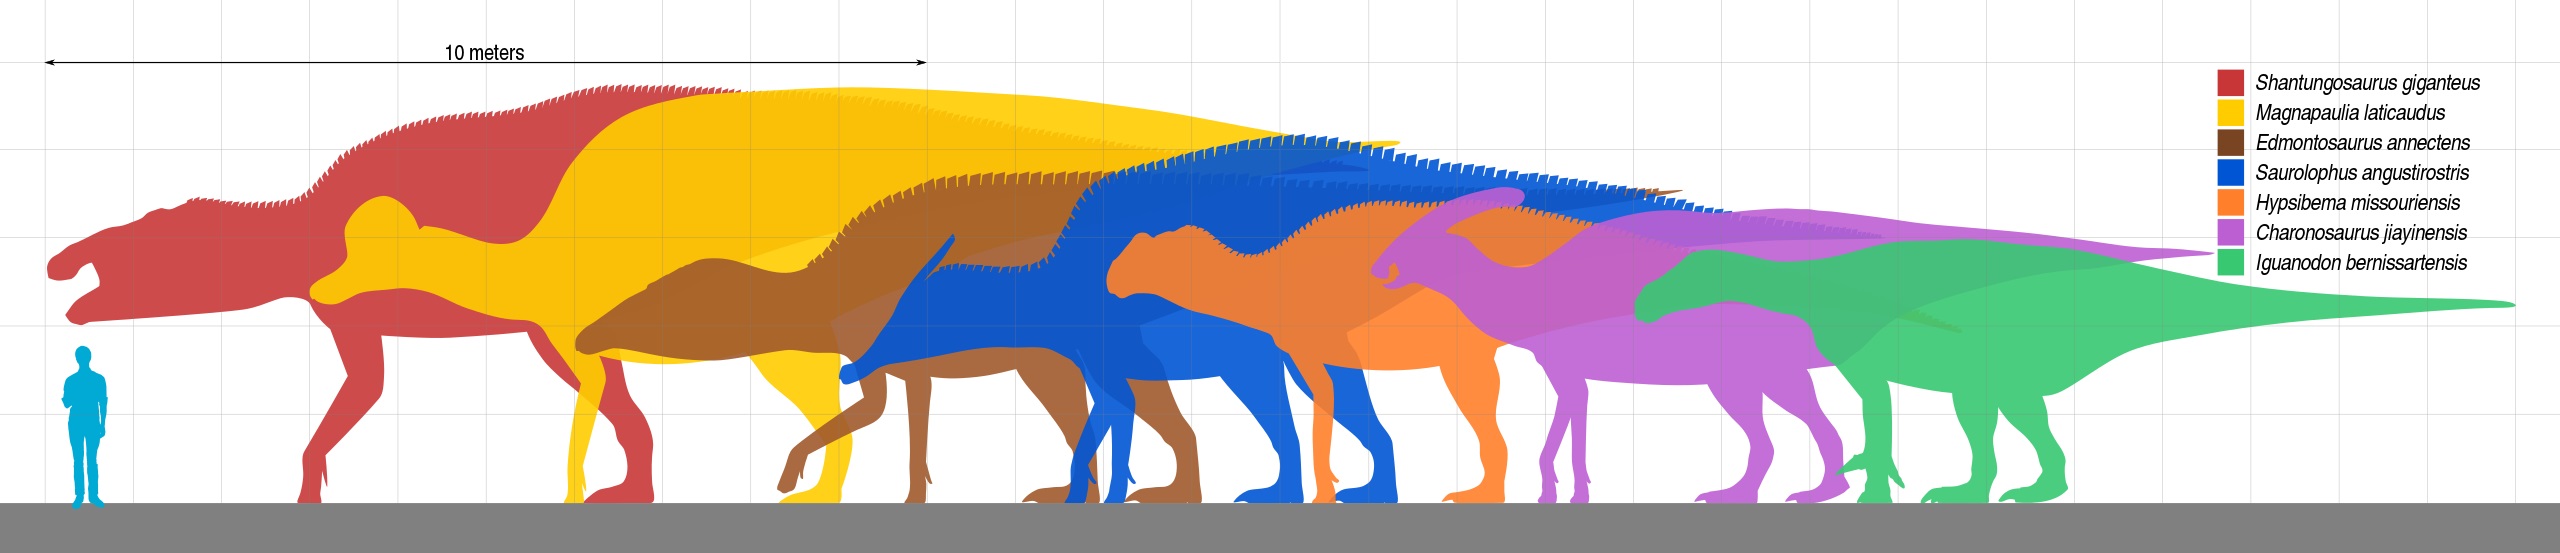 Přehled několika obřích hadrosauriformů, z nichž největším (červená silueta) je druh Shantungosaurus giganteus z Číny. Tento obří kachnozobý dinosaurus mohl dosahovat délky přes 15 metrů a hmotnosti přes 17 tun. Kredit: Slate Weasel; Wikipedia (volné